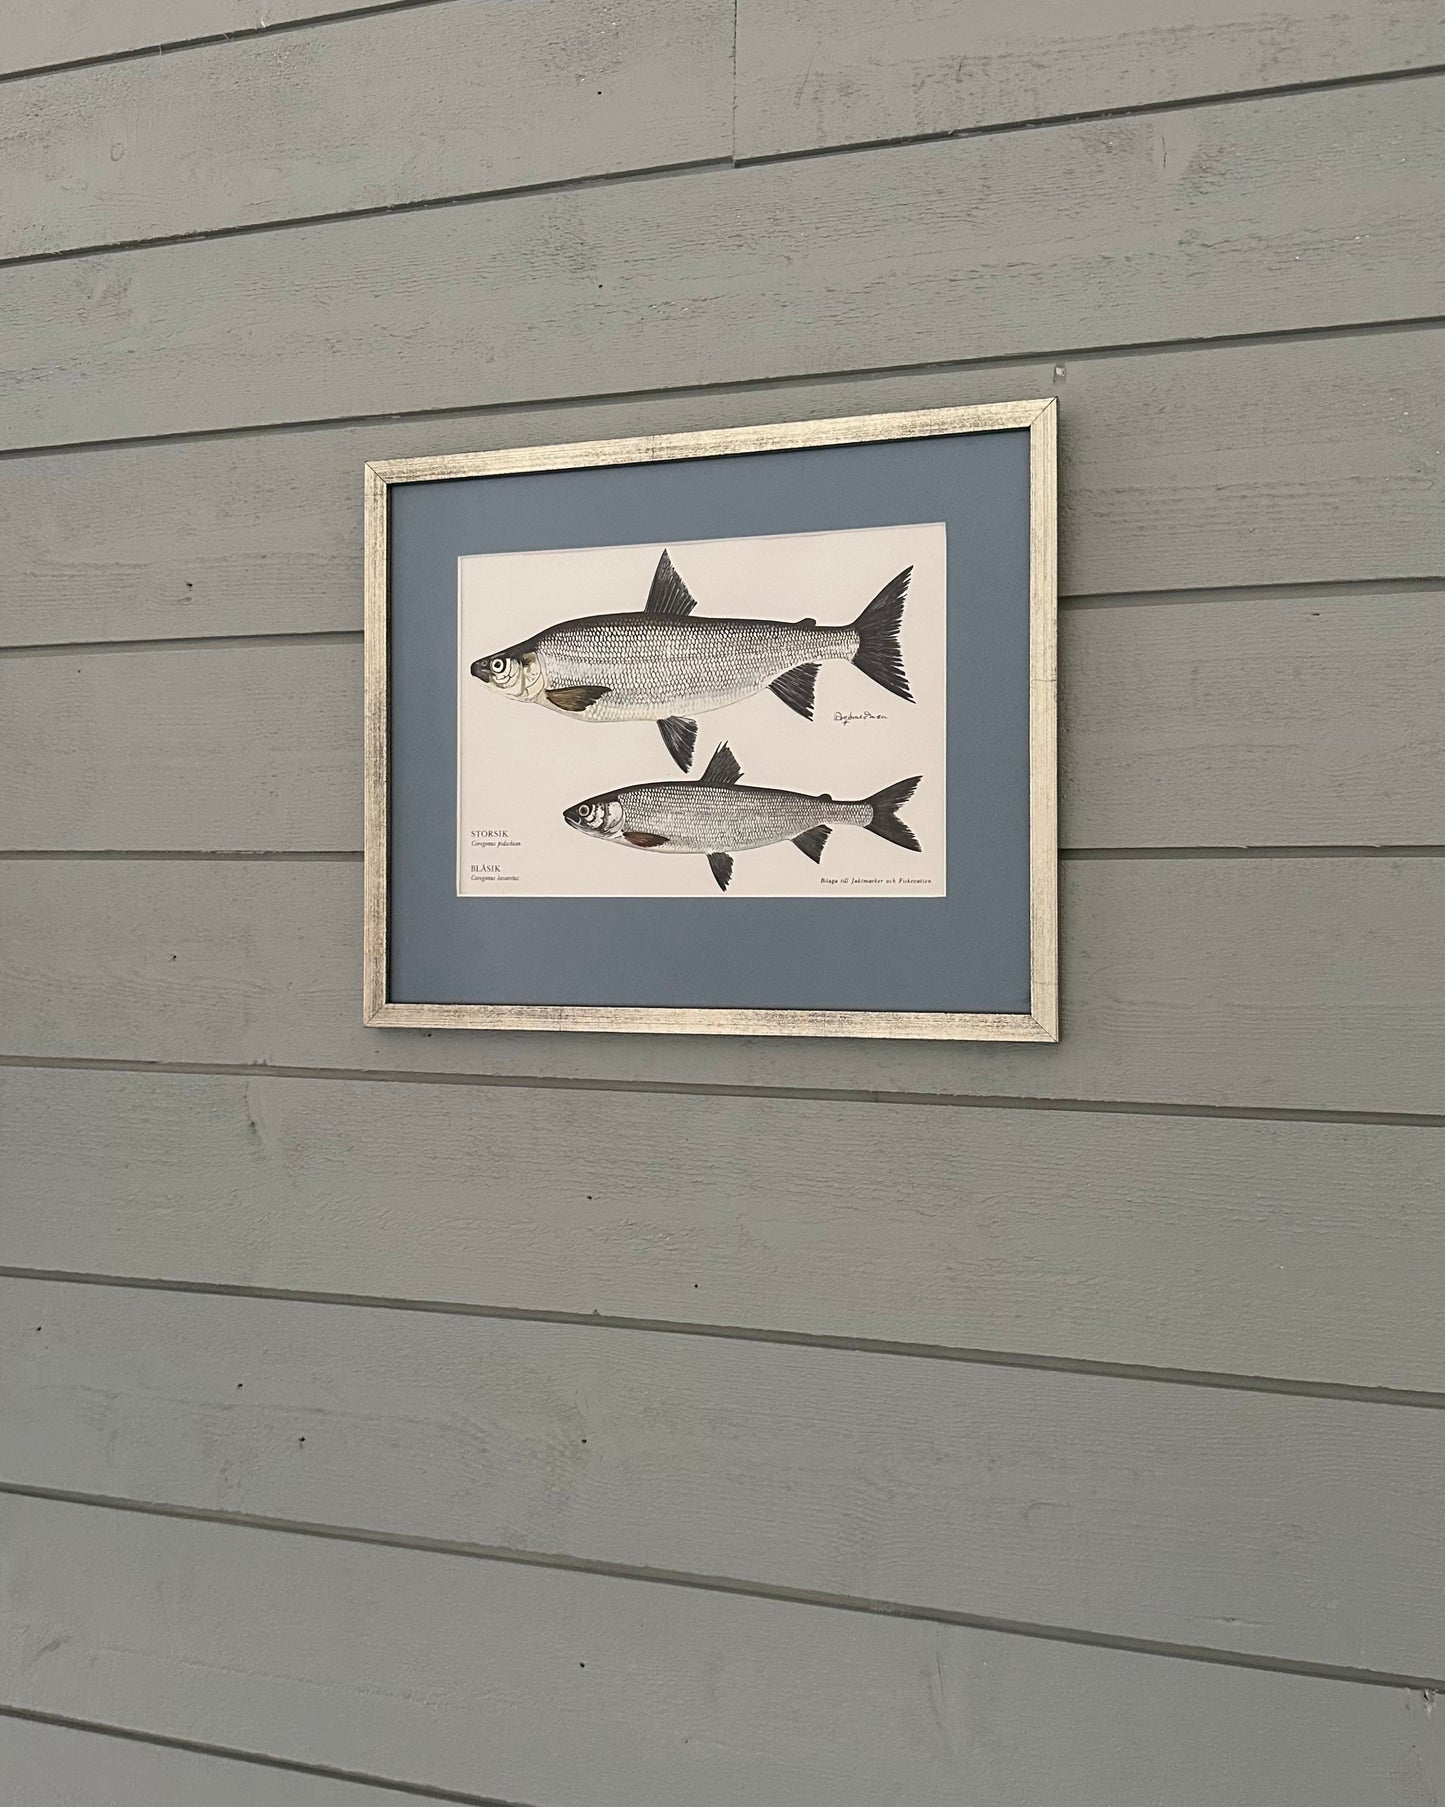 Framed Vintage Fish Print - "Storsik and Blåsik"